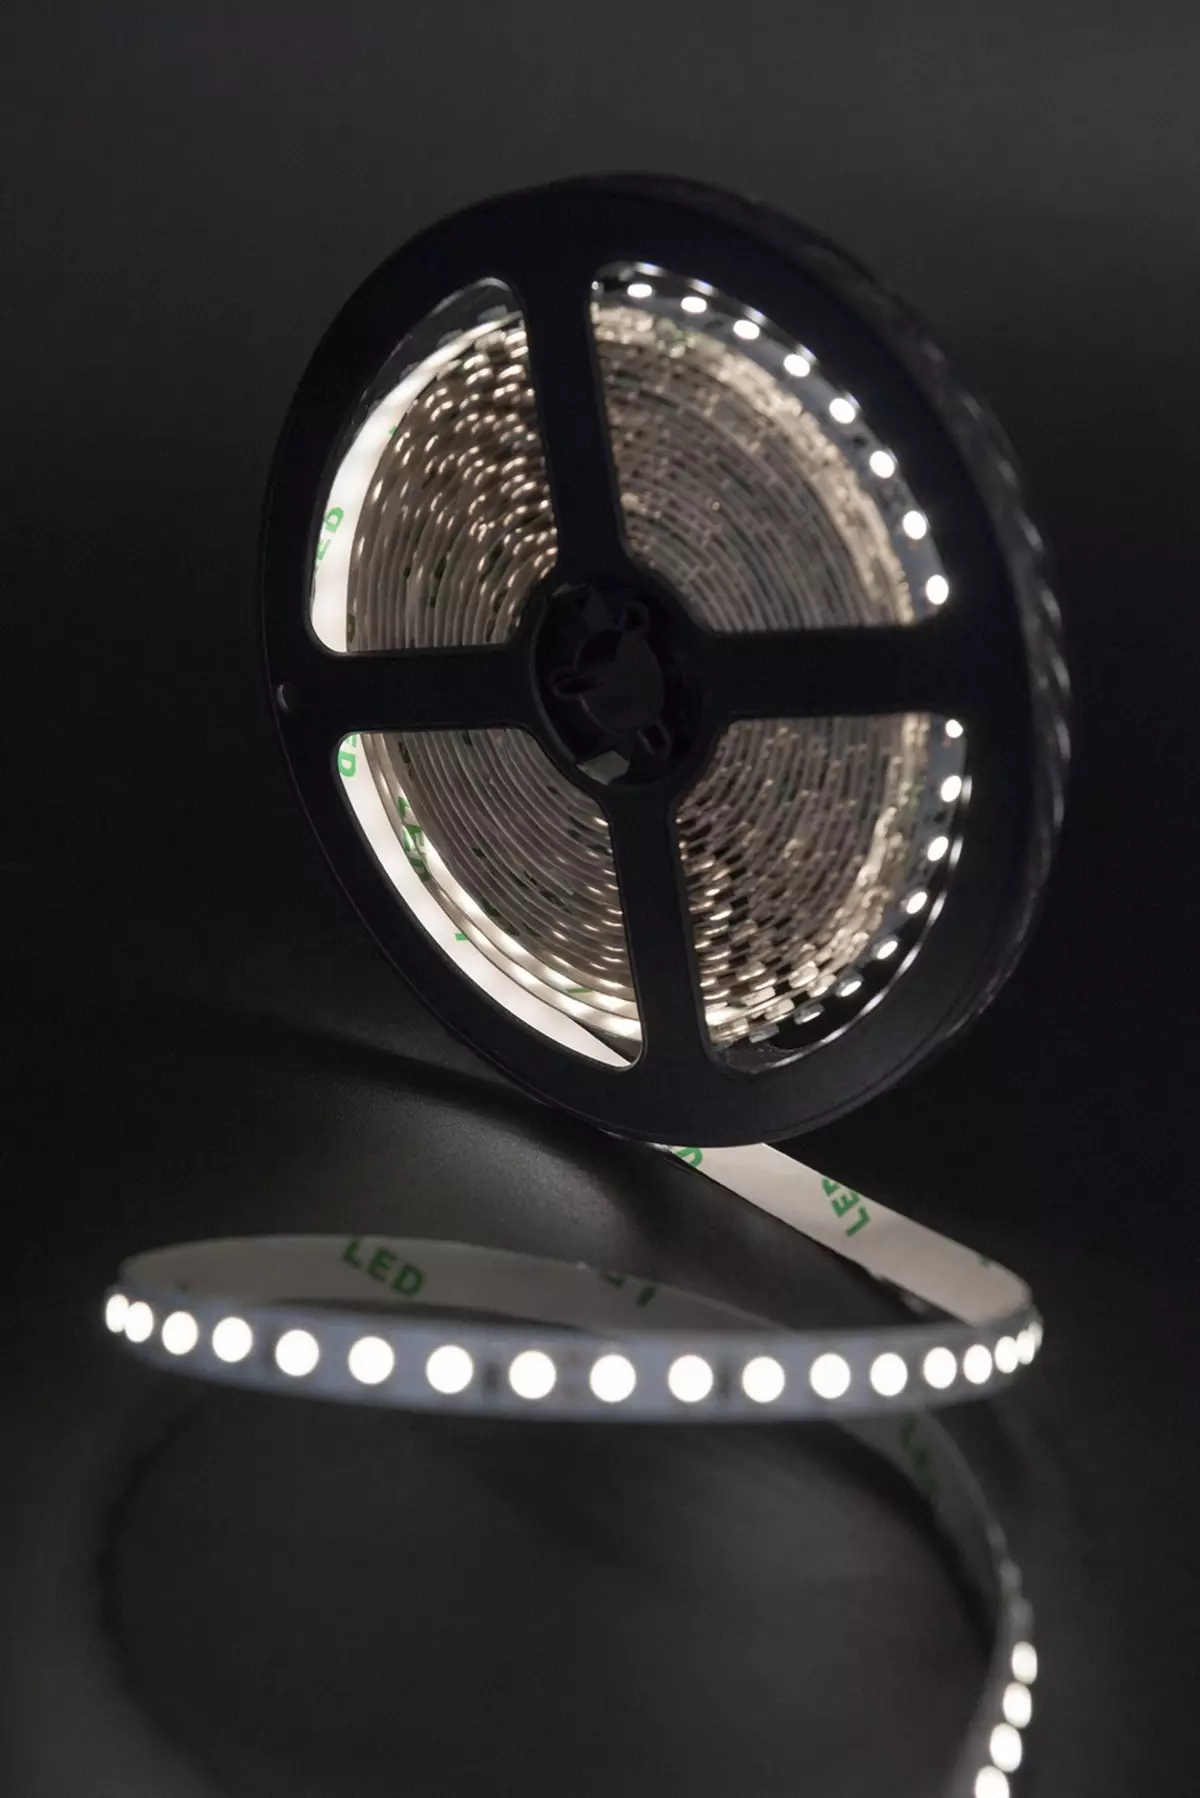 Podświetlenie LED pod szafkami kuchennymi (80 zdjęć): Przegląd nad głową, dołączonych i innych lamp kuchennych z diodami LED. Jakie lampy lepiej wybierają? 21002_47